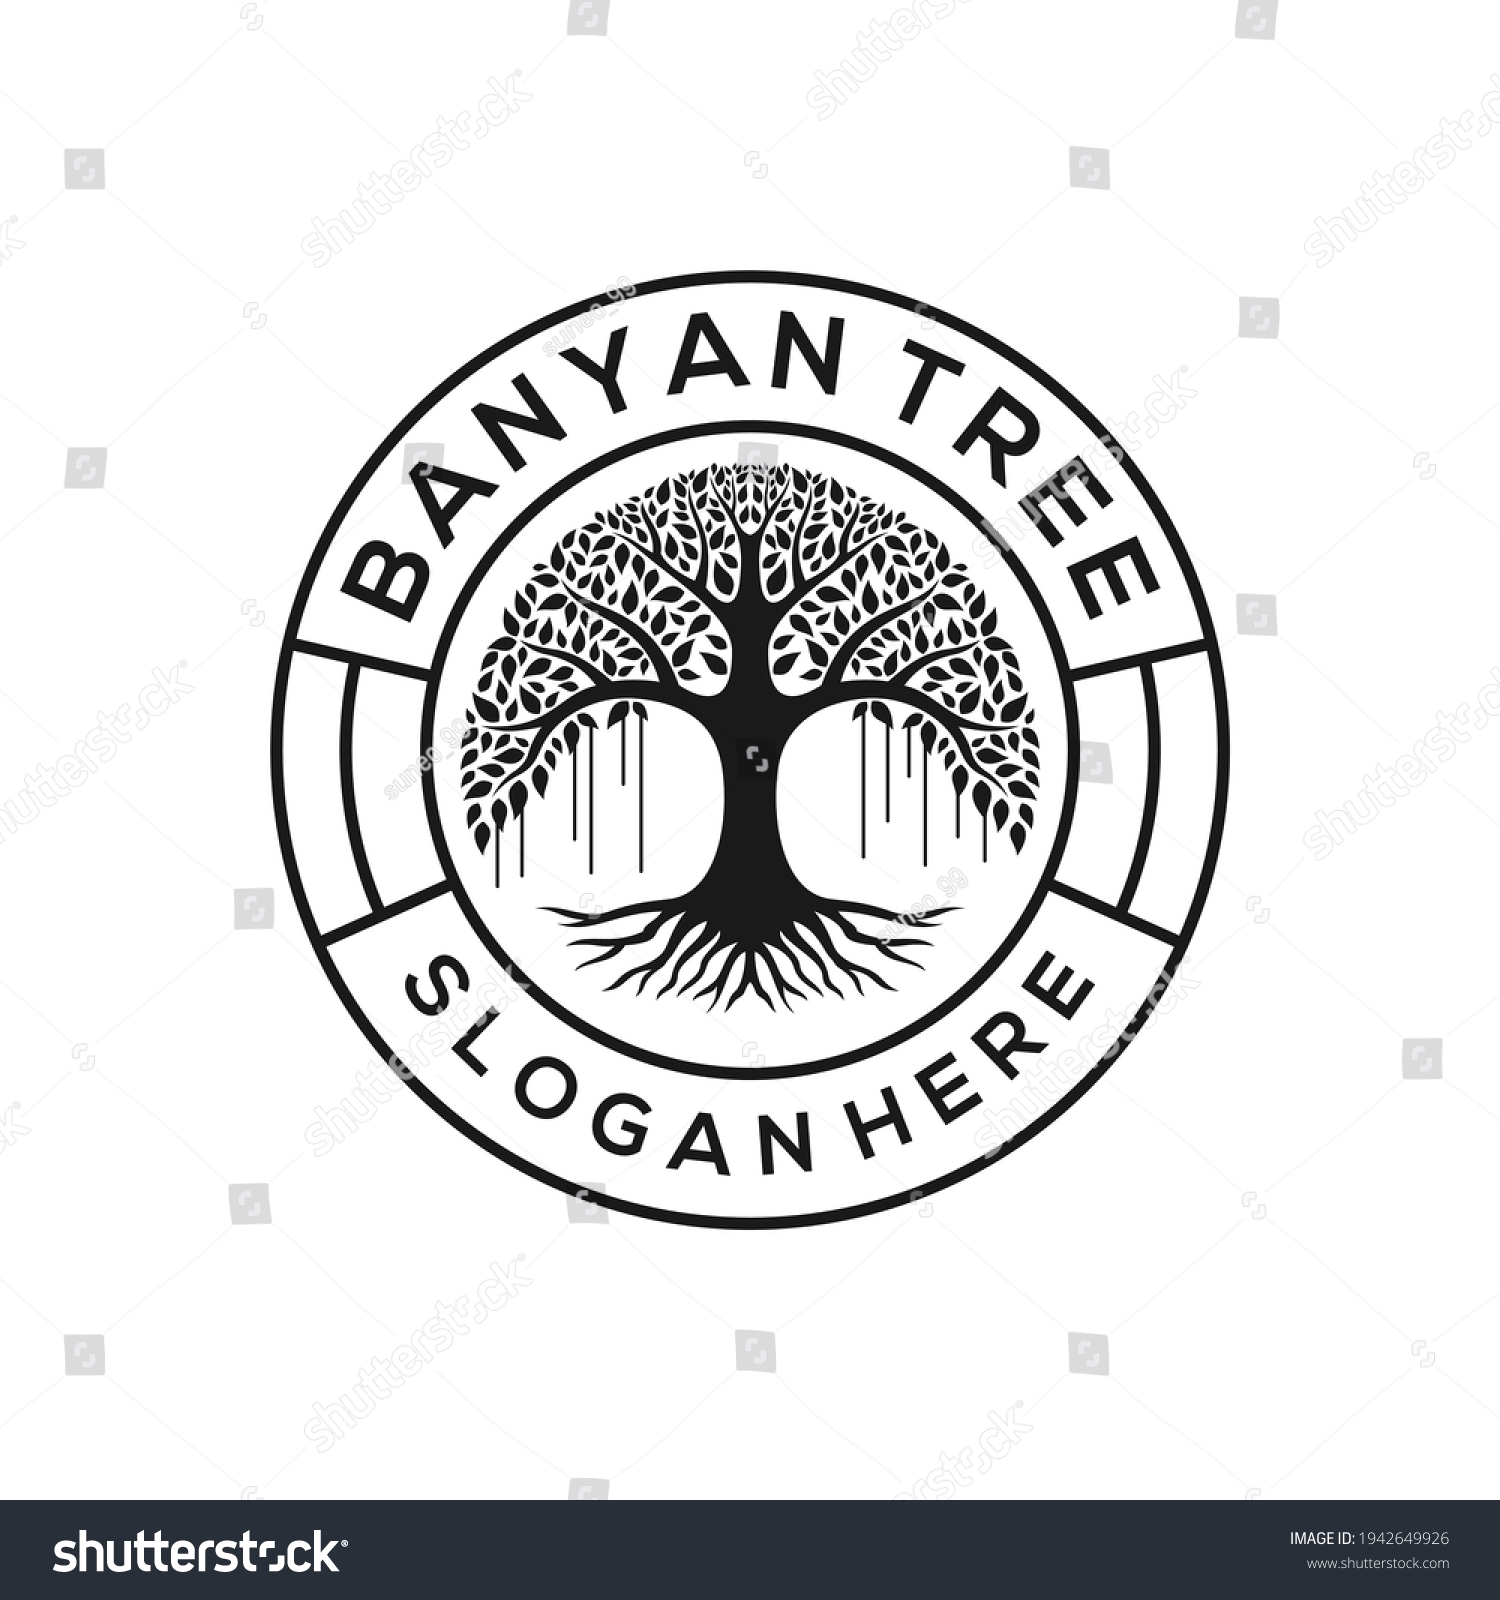 SVG of Retro vintage banyan tree logo design emblem svg